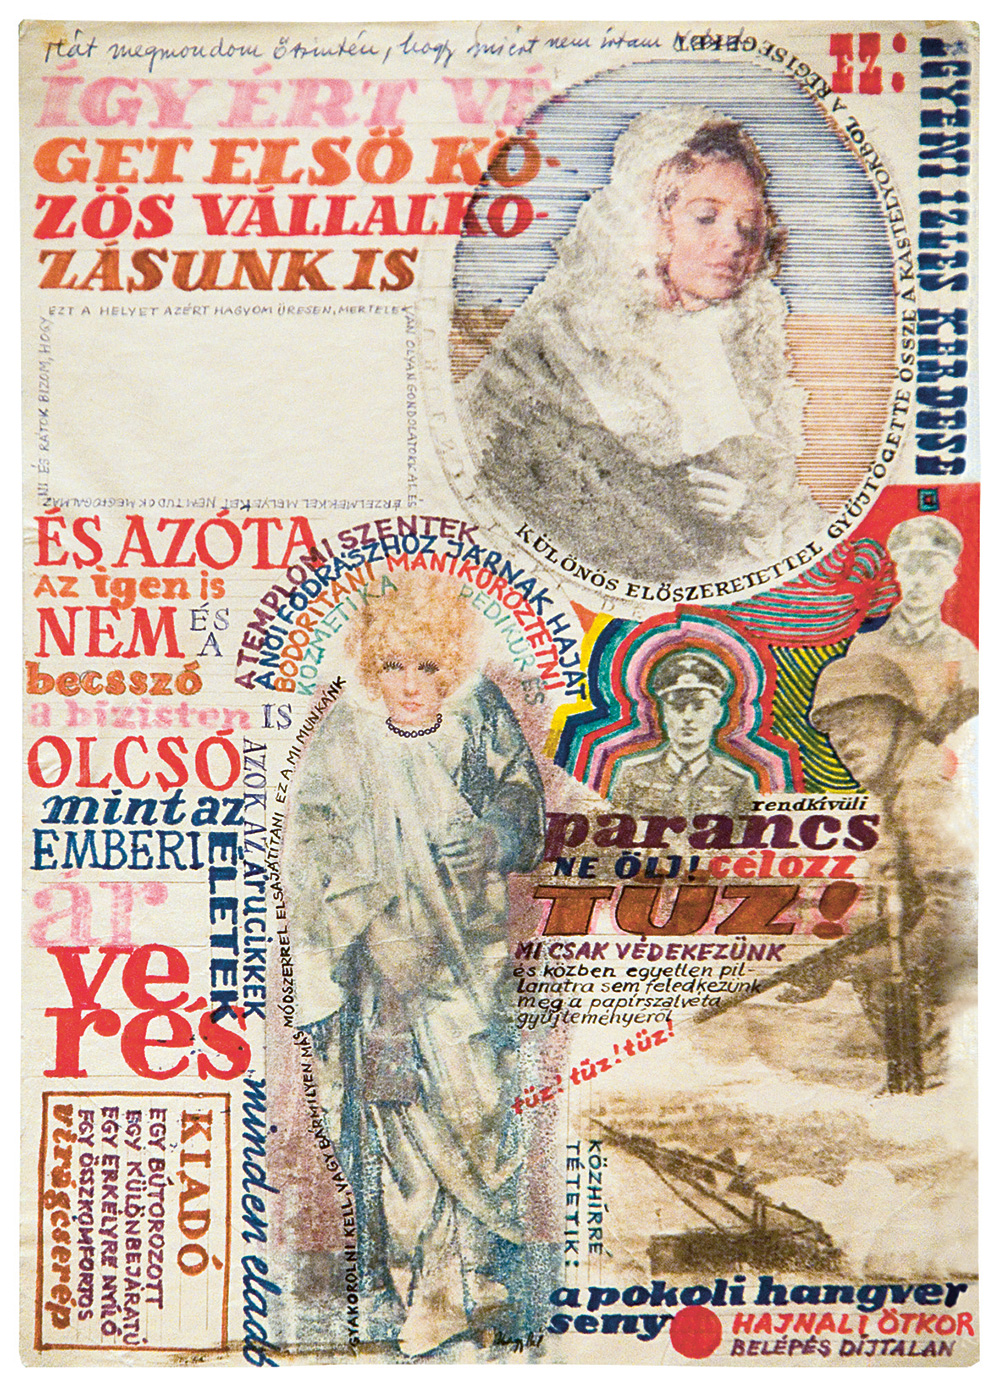 Nagy Pál: El nem küldött képlevelek 4, 1970 es évek, 24,5×20,5 cm